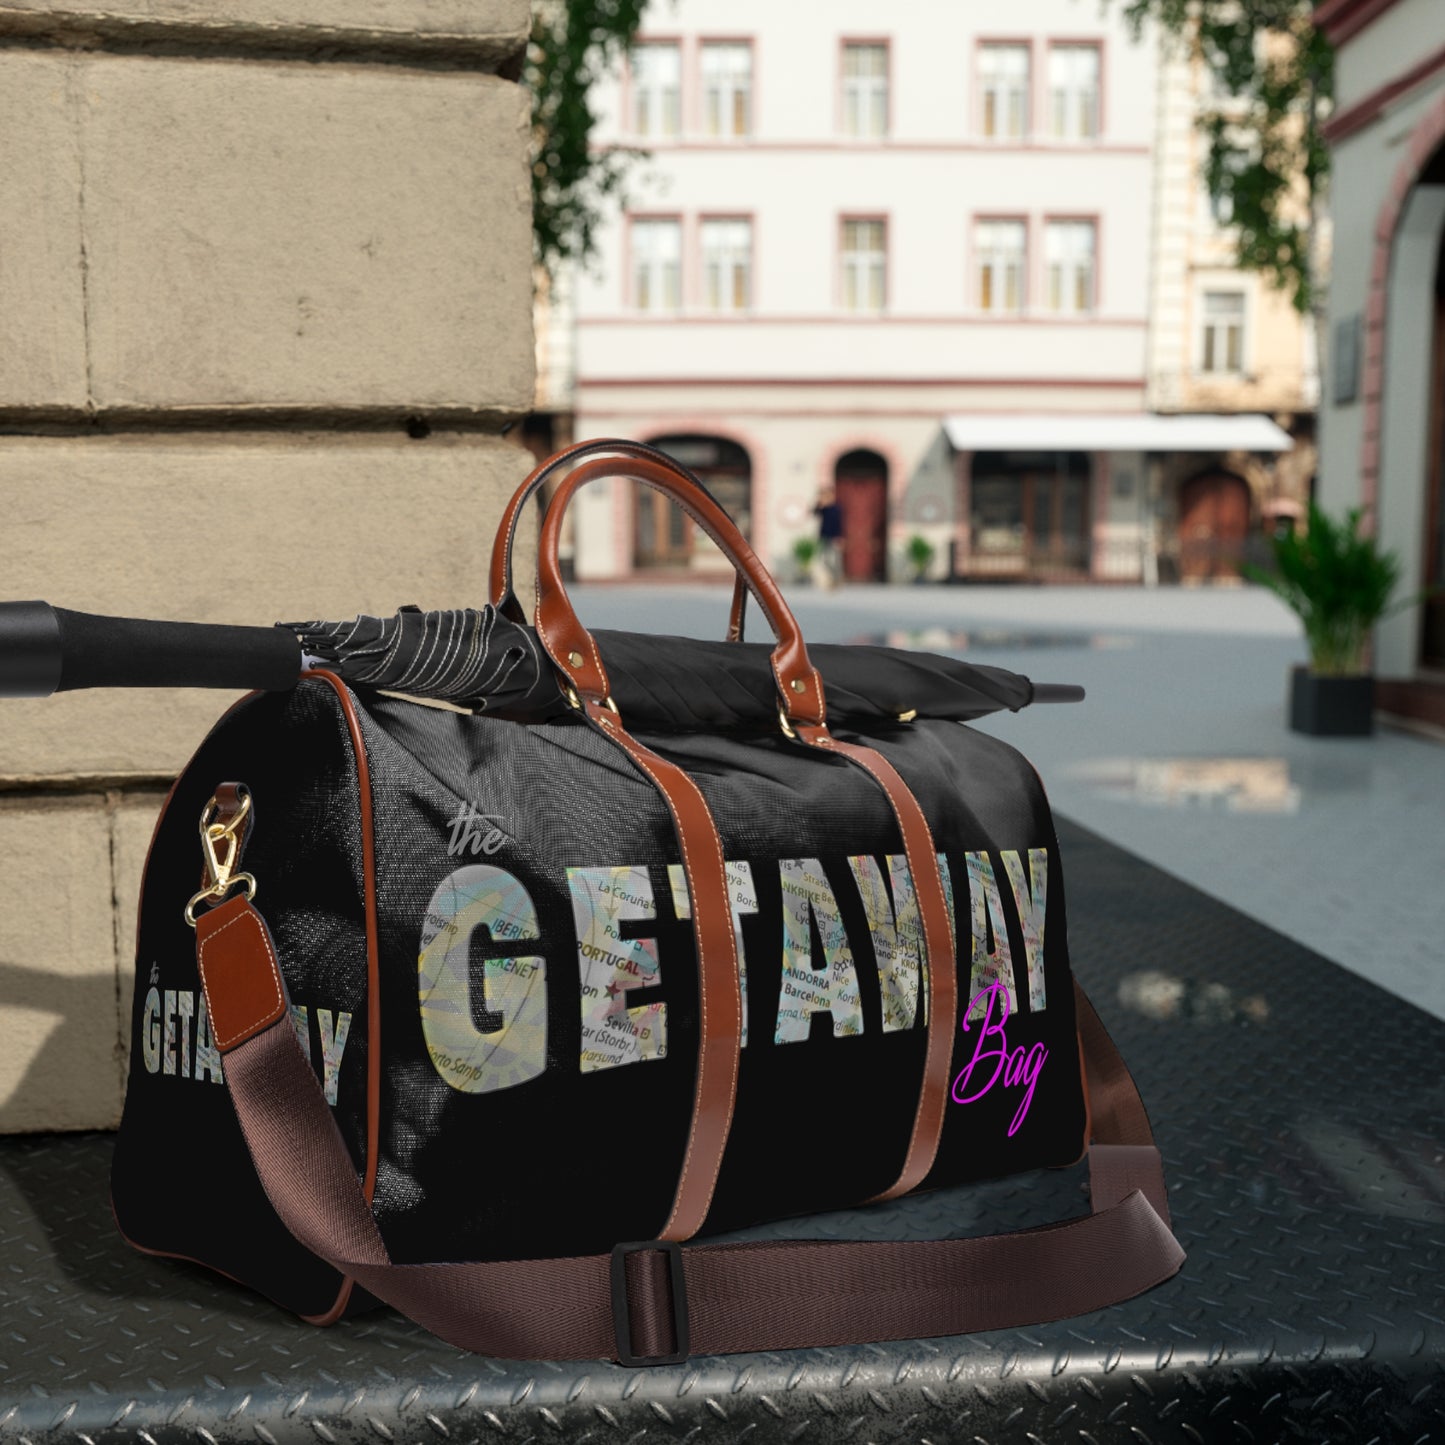 The Getaway Bag!